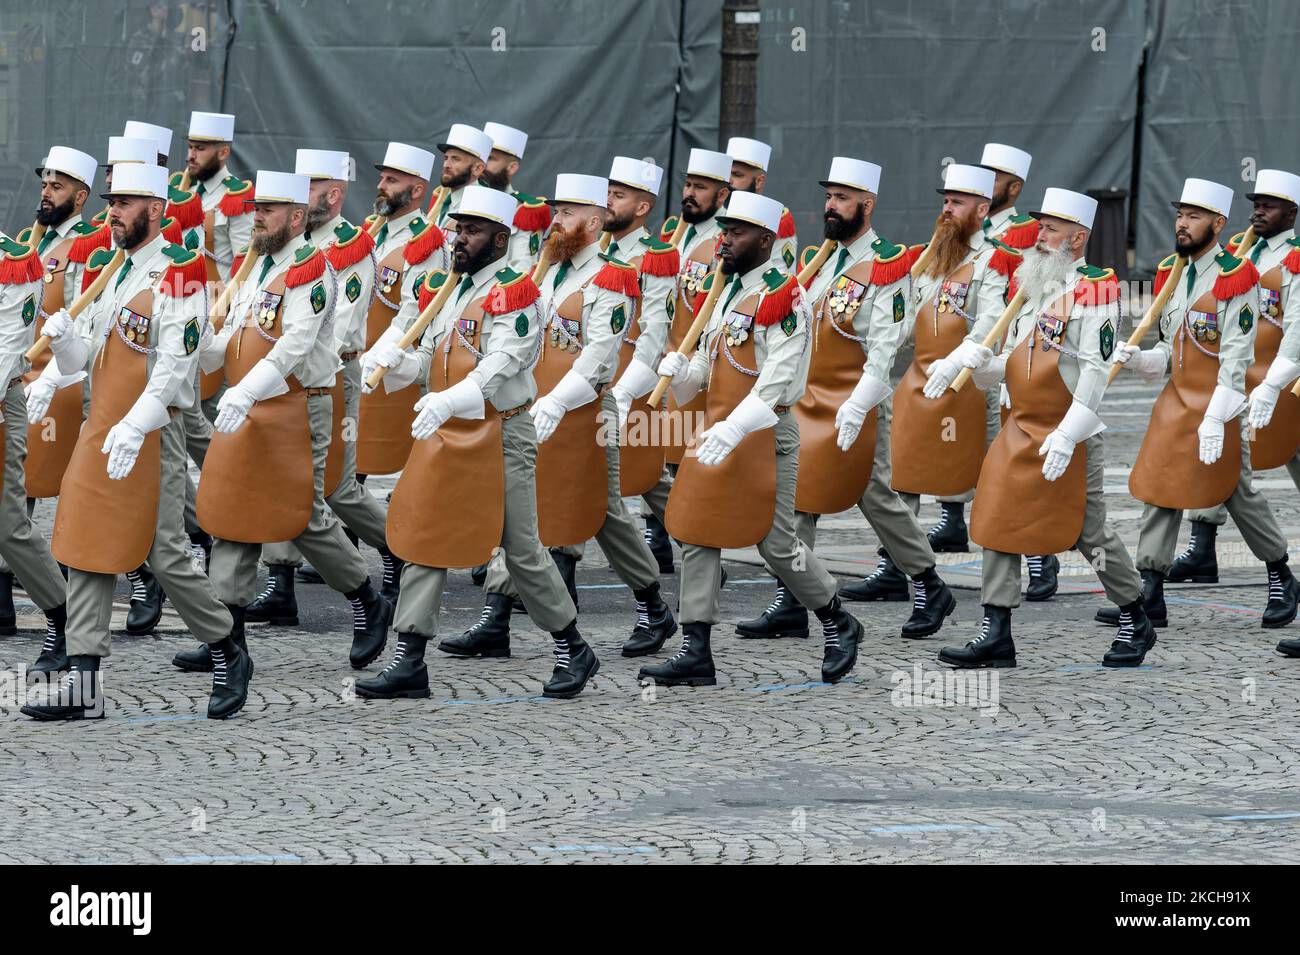 Soldaten der französischen Fremdenlegion marschieren am 14. Juli 2021 mit seiner Frau Brigitte Macron und seiner Regierung vor dem französischen Präsidenten Emmanuel Macron während der Juillet-Militärparade 14 auf der Champs-Elysees Avenue in Paris. (Foto von Daniel Pier/NurPhoto) Stockfoto